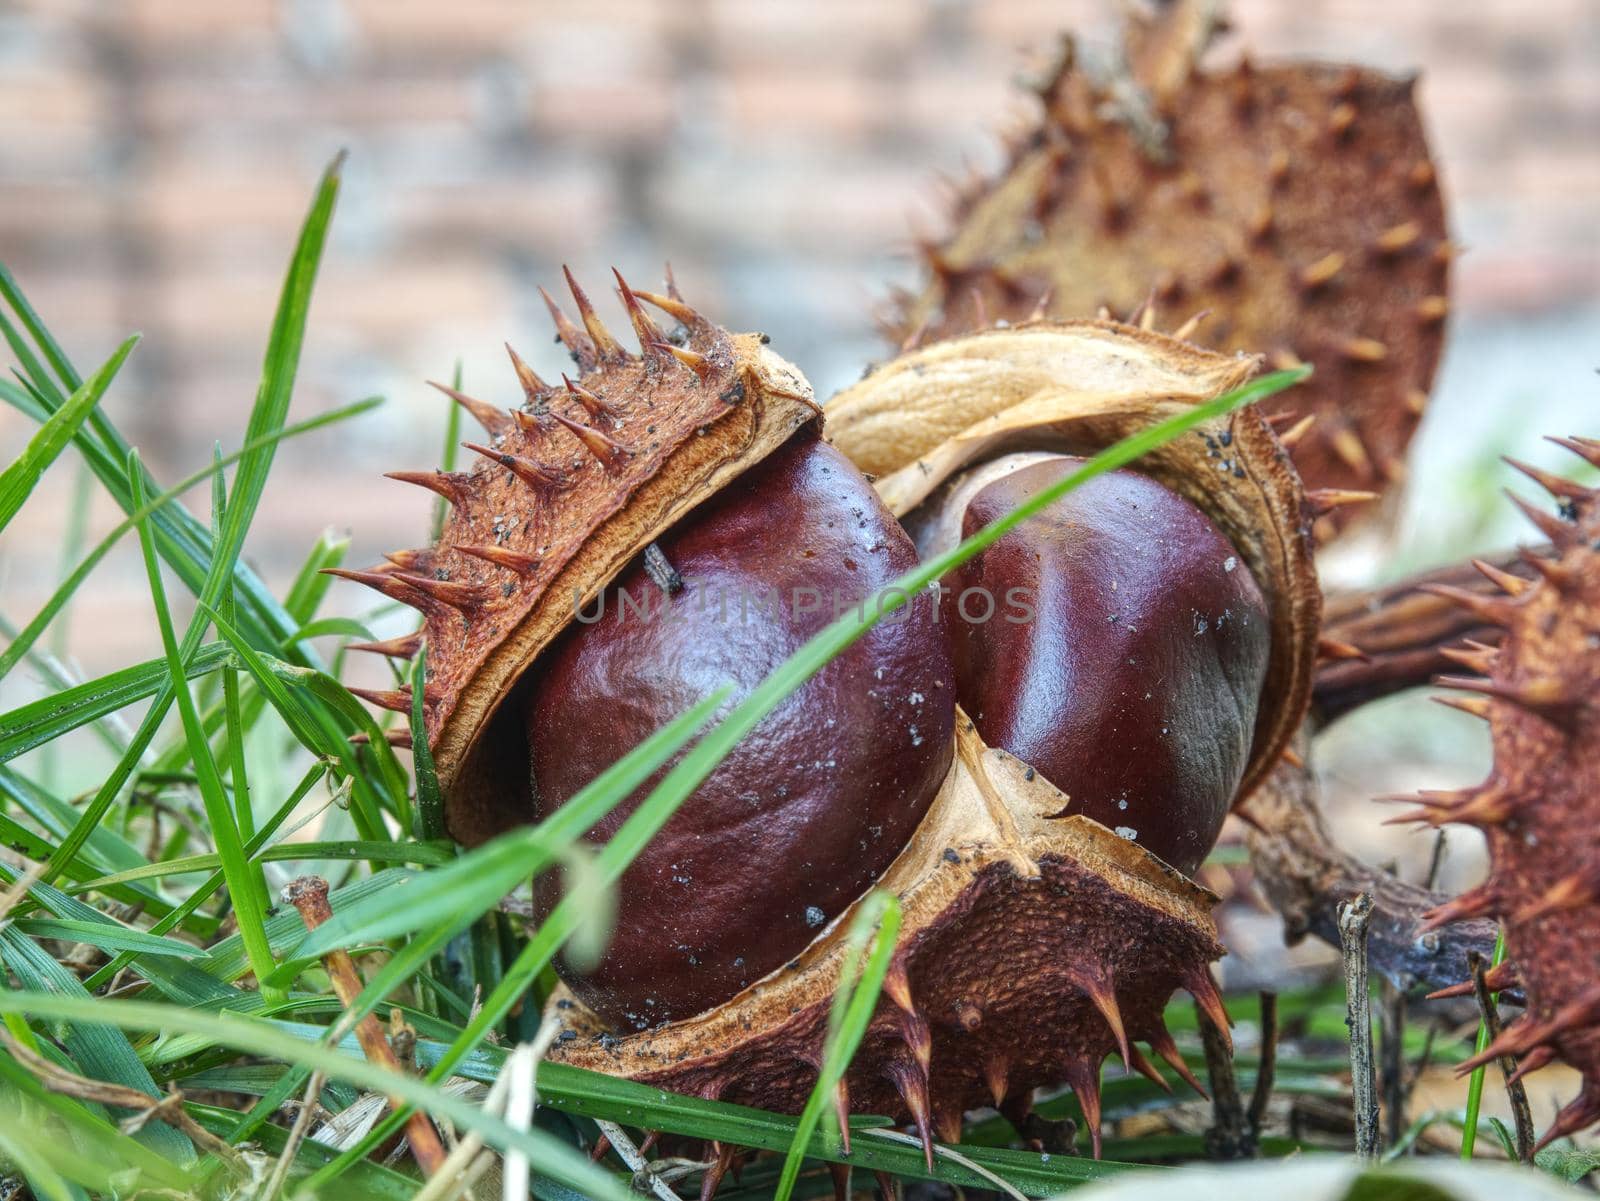 Nice fresh chestnut found in grass, symbol of beginning  autumn.  